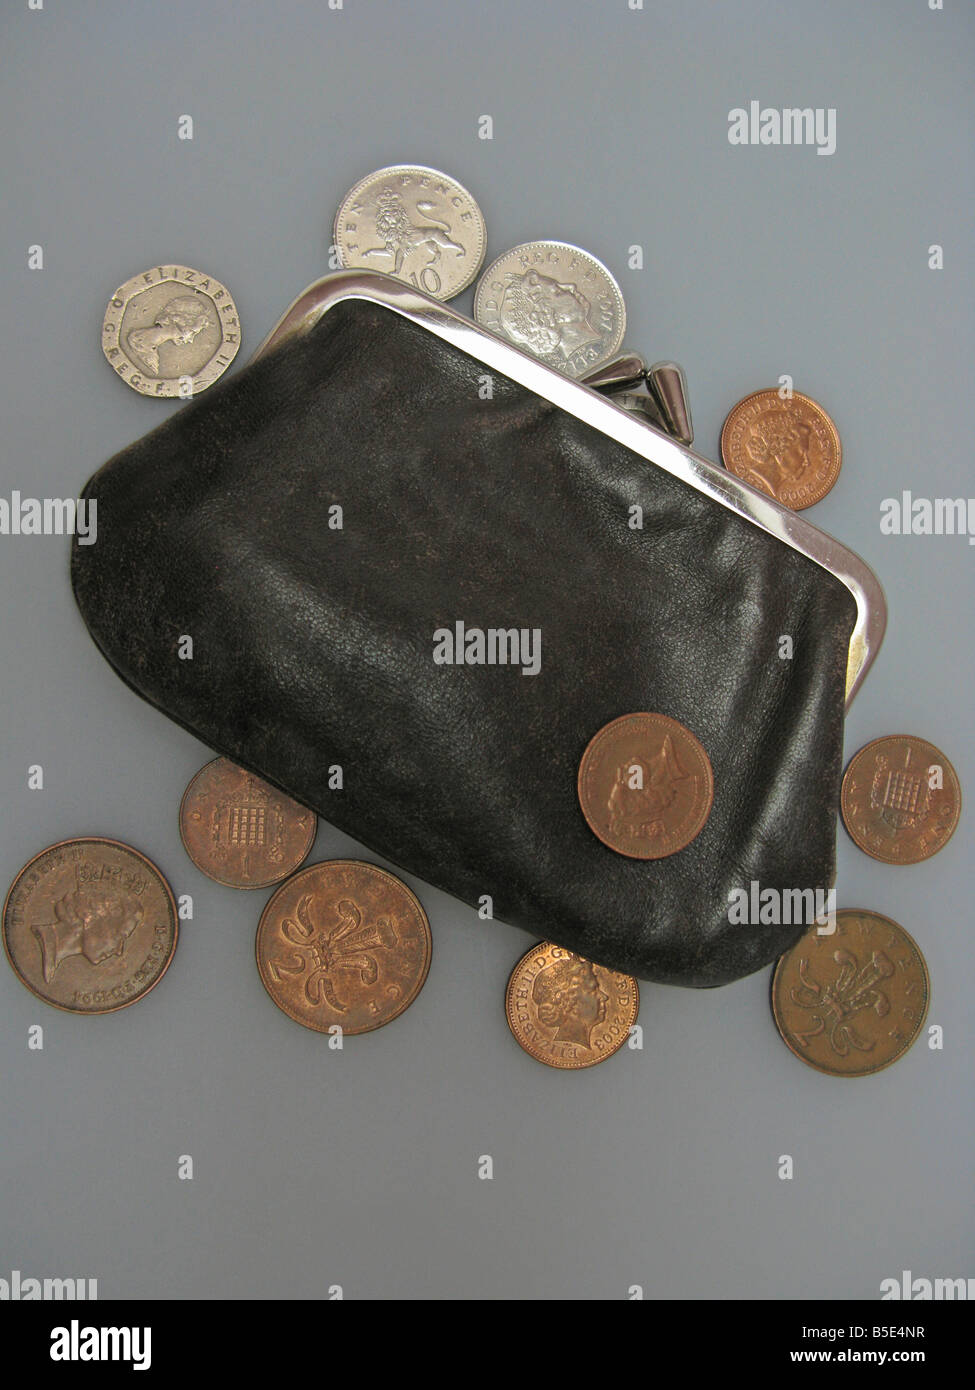 Antigua maltratadas monedero con monedas en la crisis crediticia tiempos difíciles Foto de stock